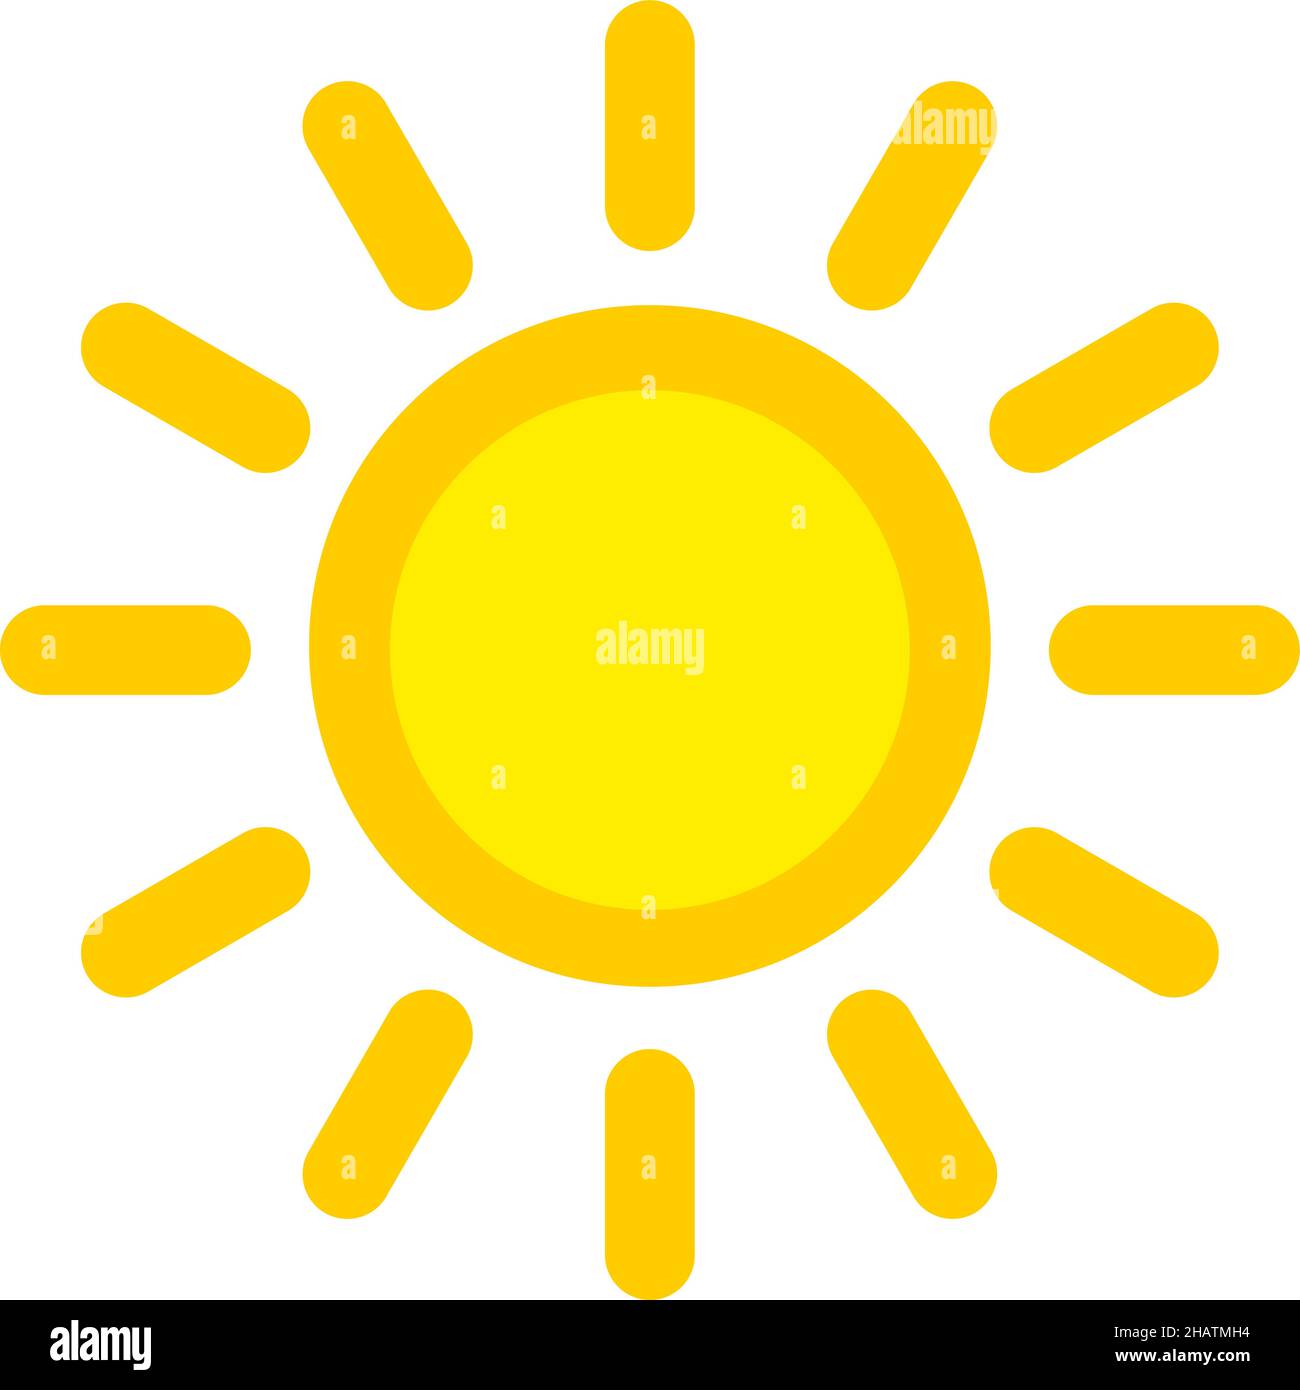 Sonnensymbol. Leuchtendes gelbes sol-Symbol mit Strahlen im kindisch-einfachen Stil Stock Vektor